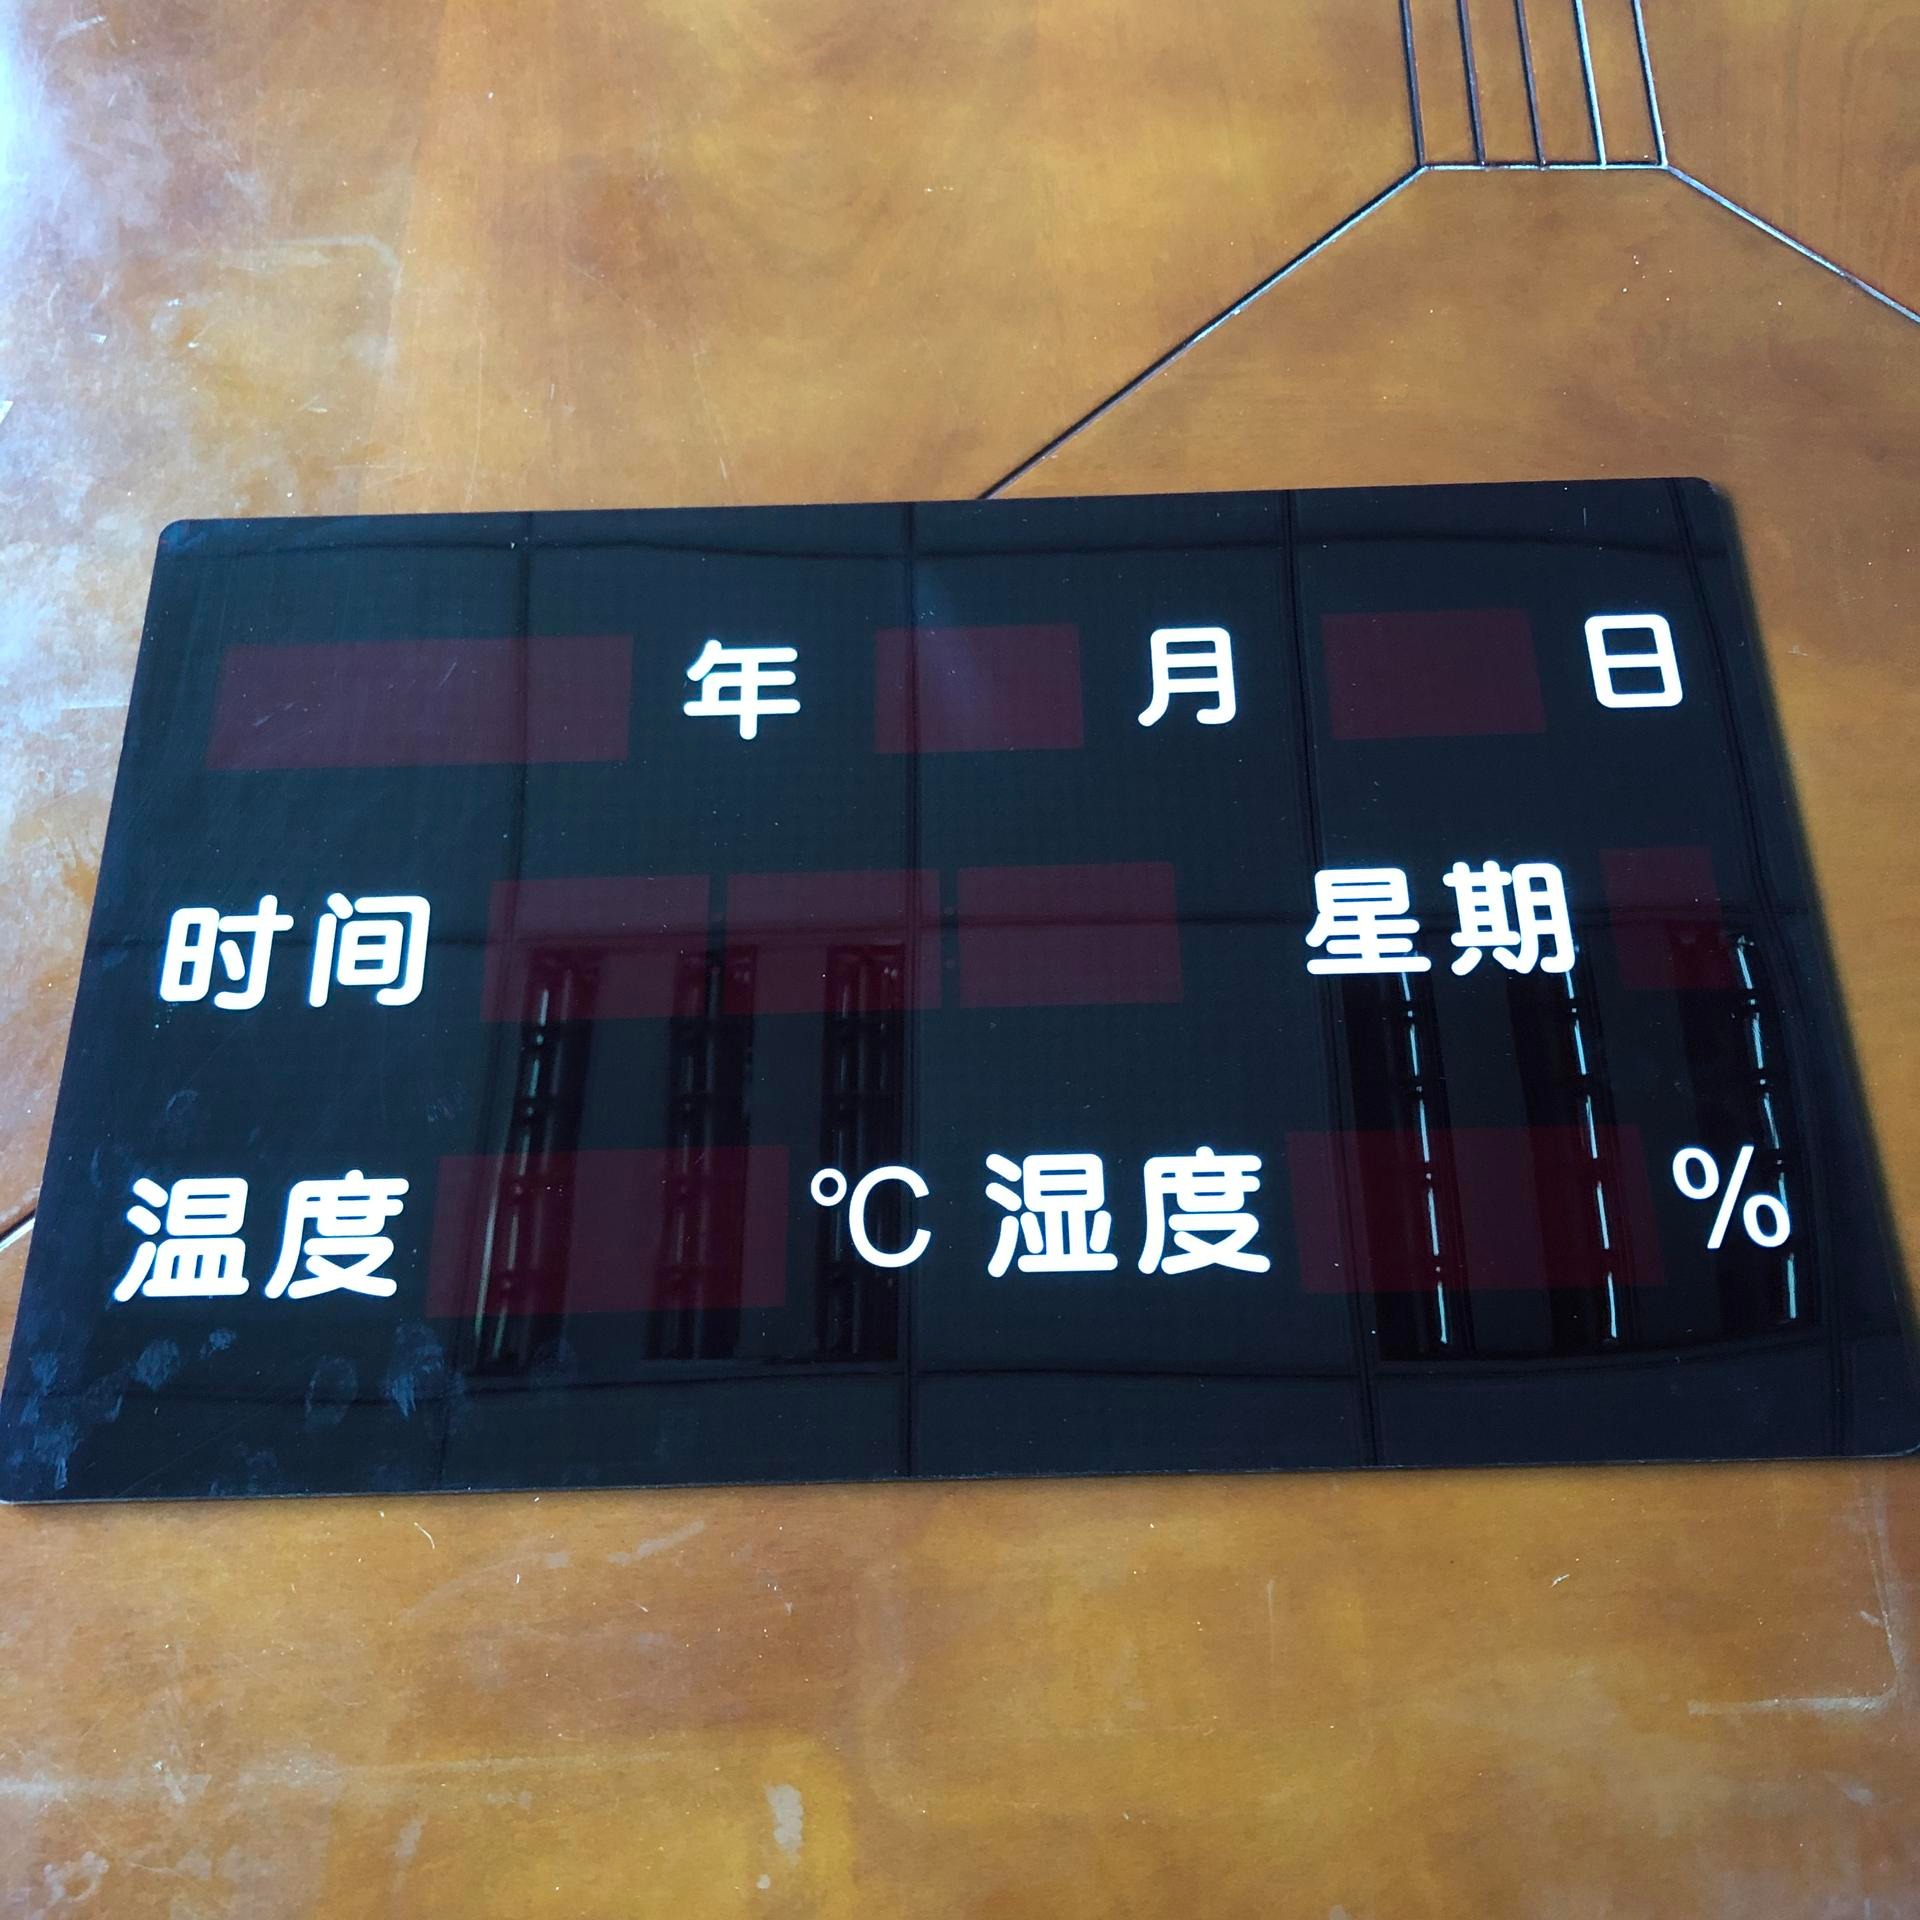 万年历亚克力面板 广告机多媒体终端机PC面板 定制大尺寸切割面板 CNC精雕丝印生产厂家